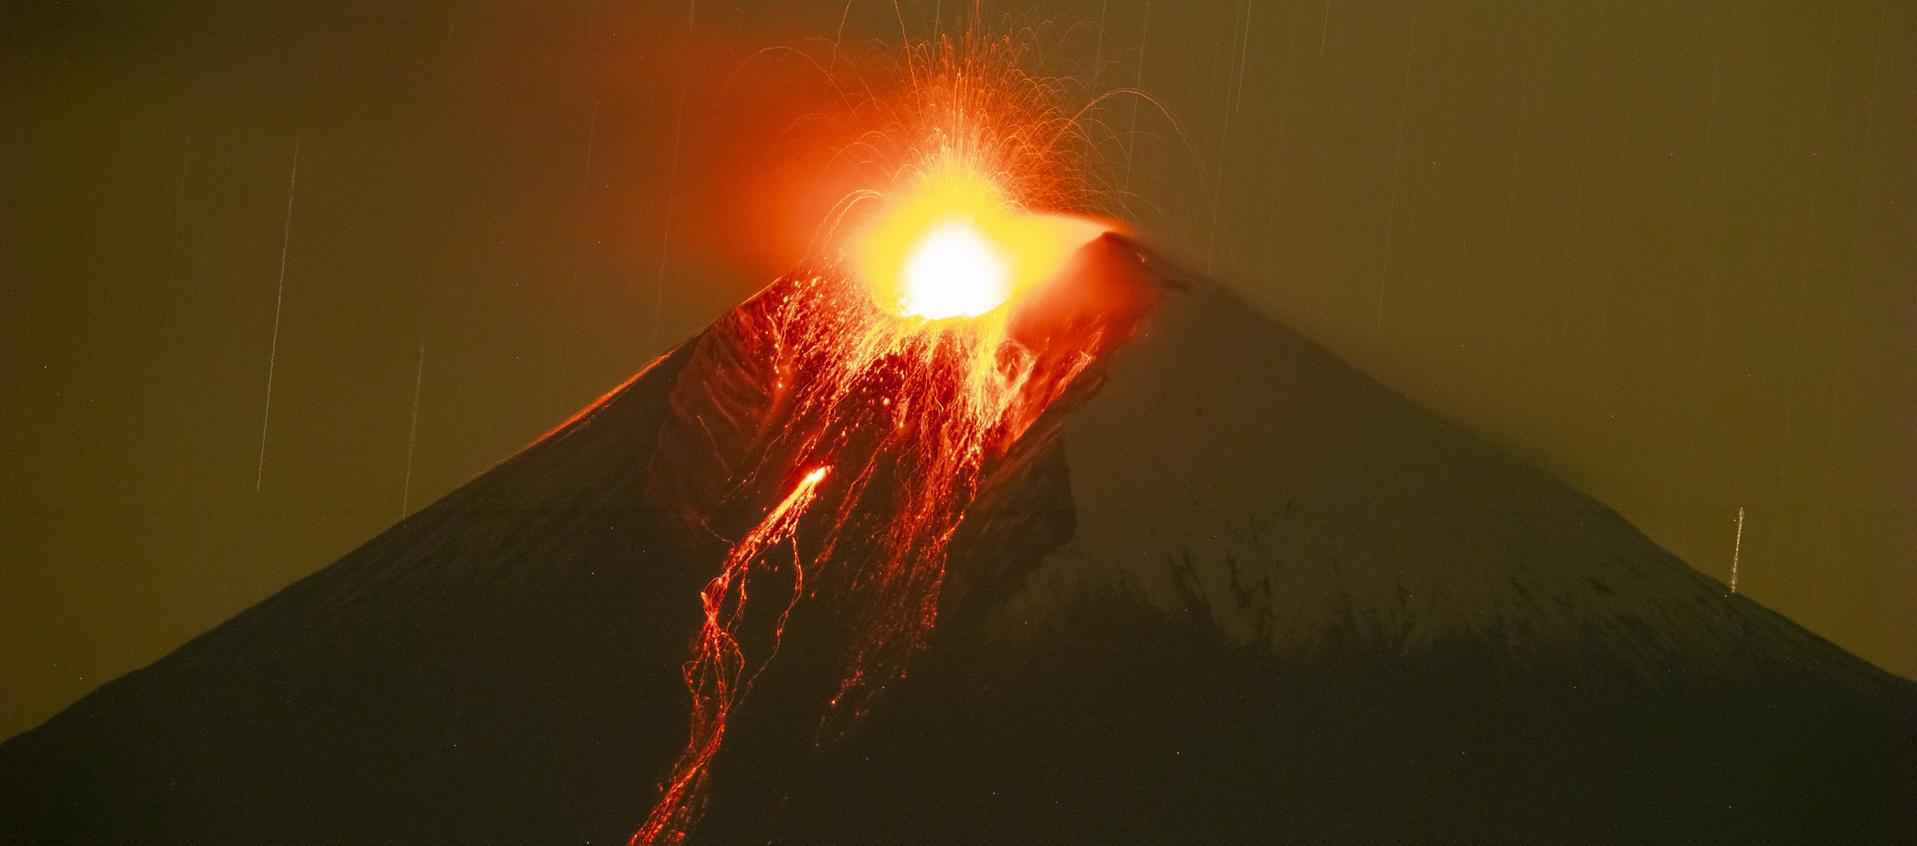 Foto de archivo del volcán Sangay.